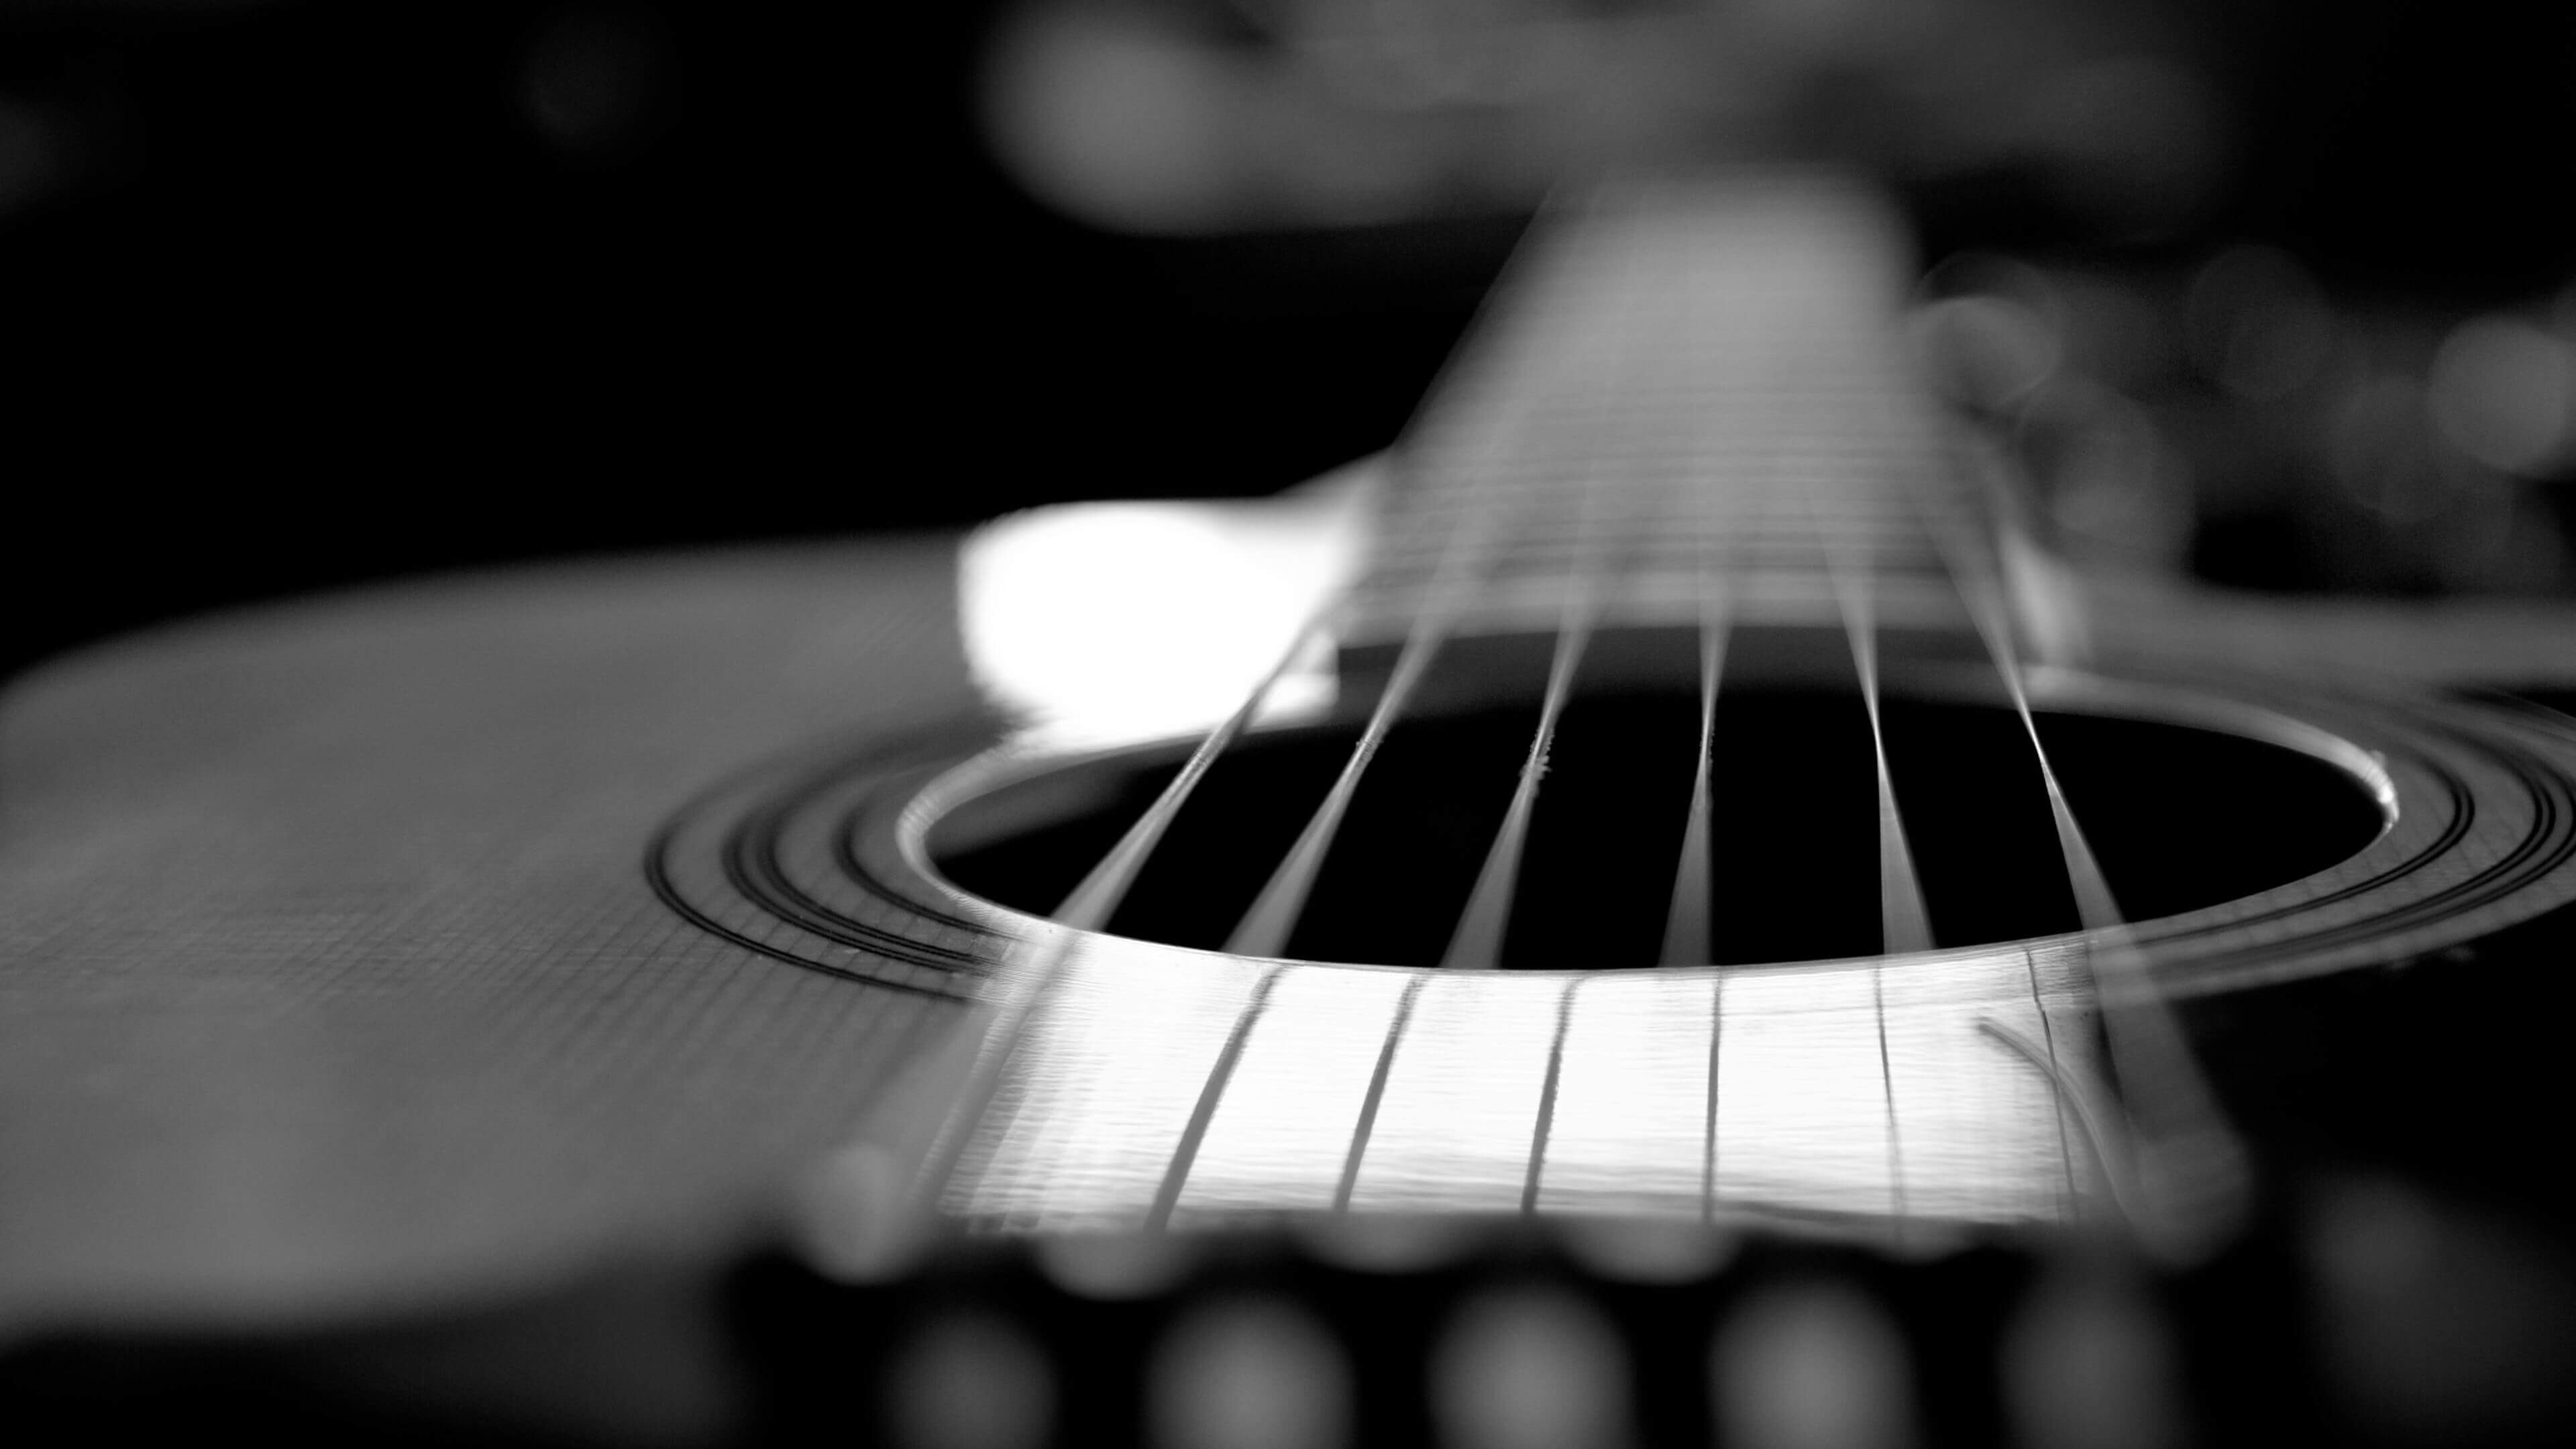 fond d'écran guitare noir,guitare,guitare acoustique,noir,instruments à cordes pincées,instrument de musique